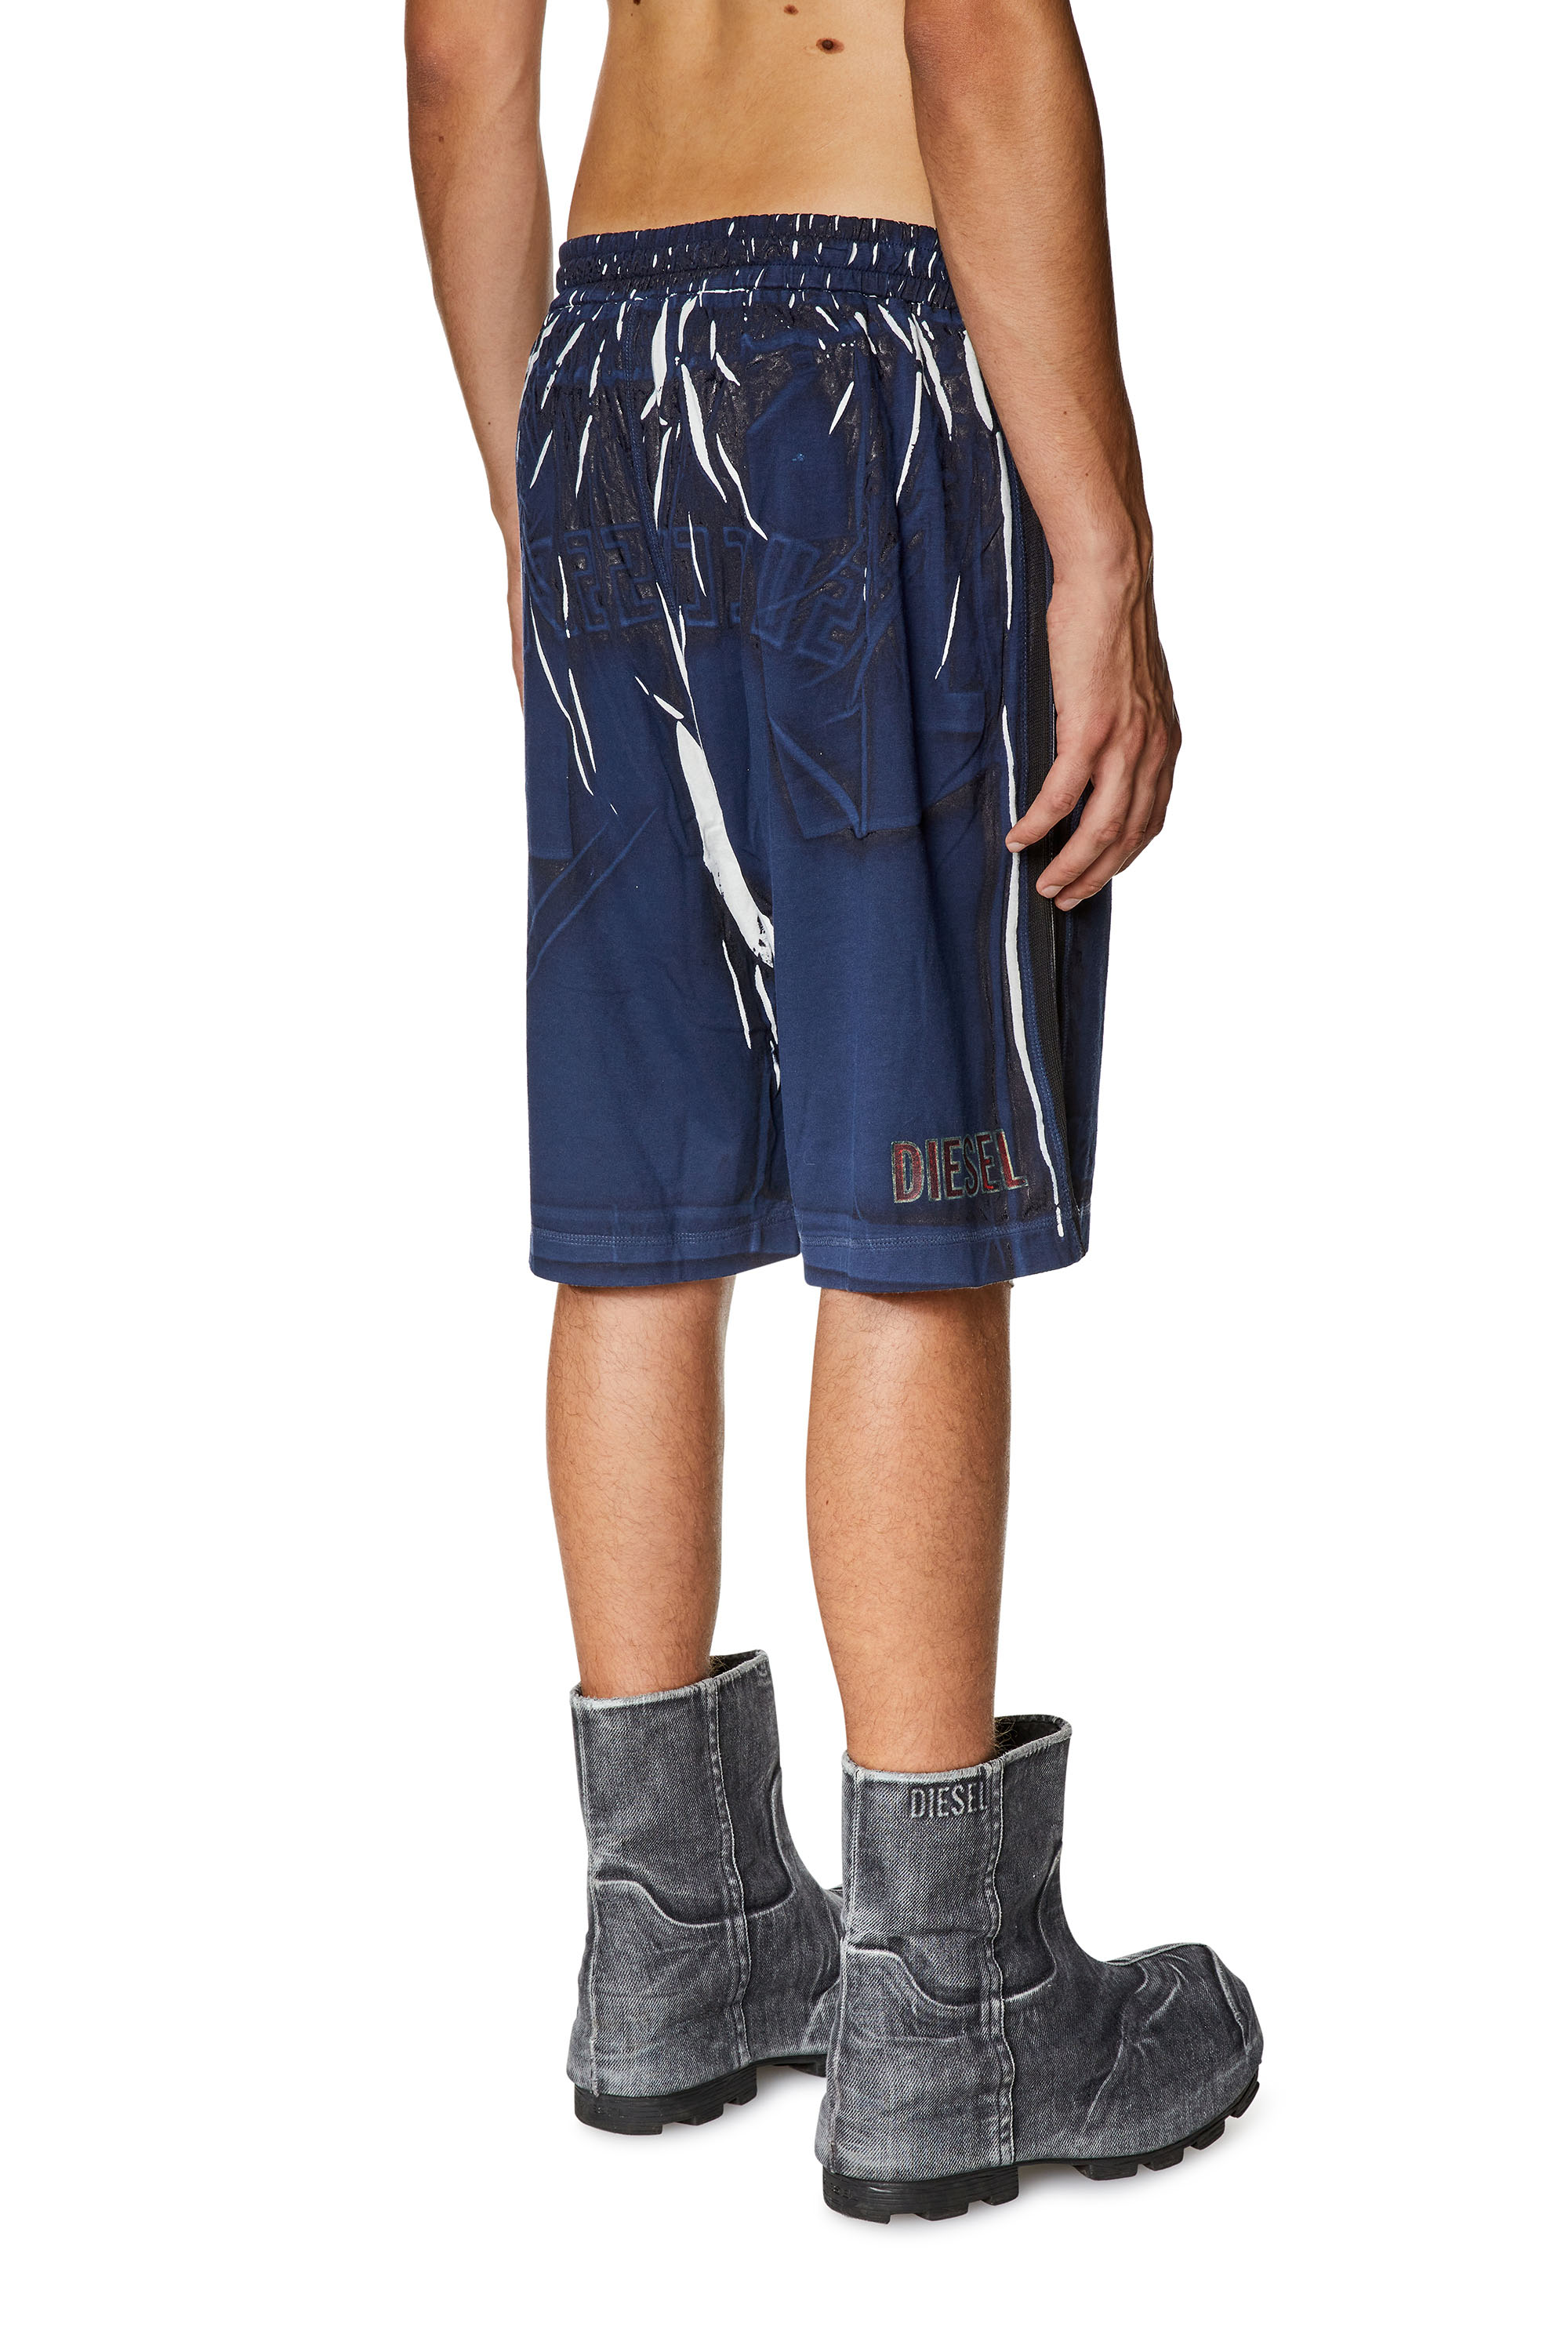 Diesel - P-ROWY, Hombre Pantalones cortos deportivos con sobreimpresión sombreada in Azul marino - Image 2